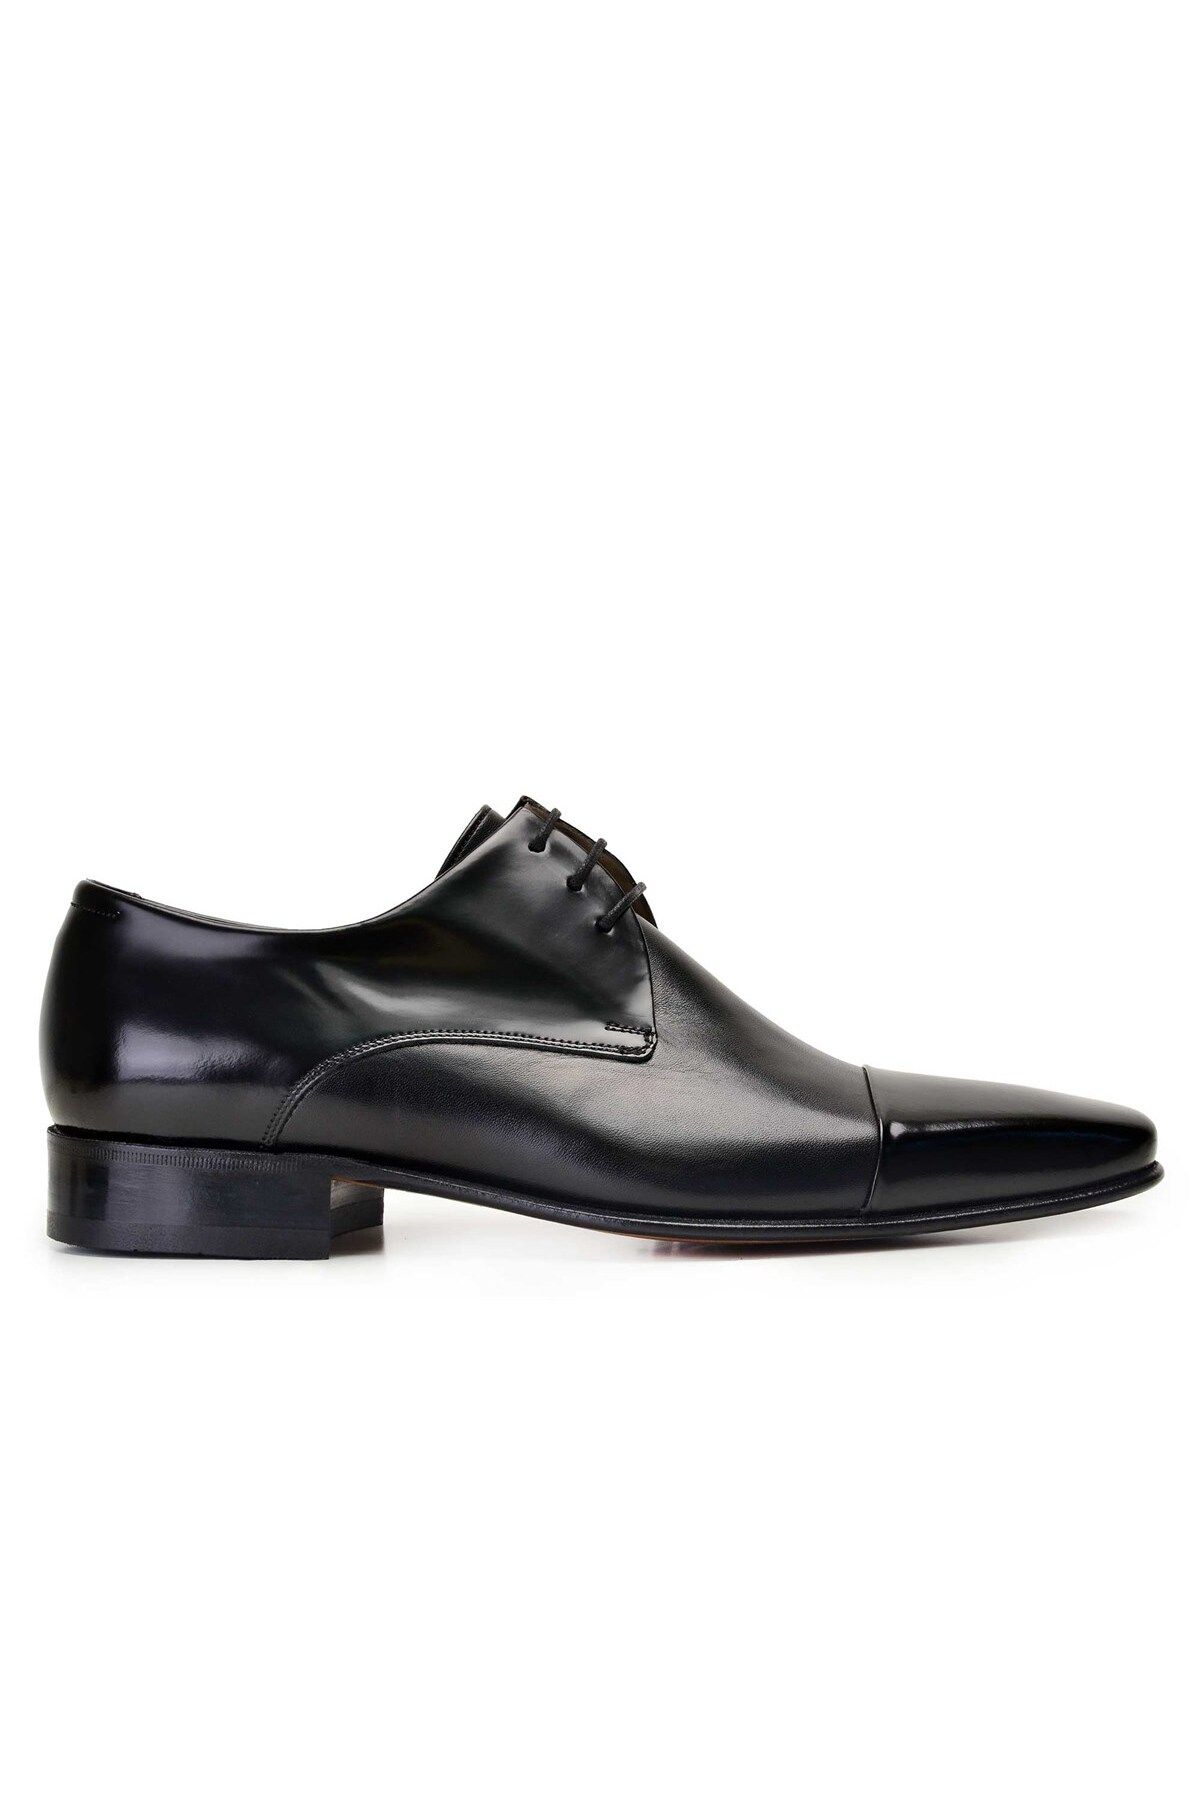 Nevzat Onay Siyah Klasik Bağcıklı Kösele Erkek Ayakkabı -7200-